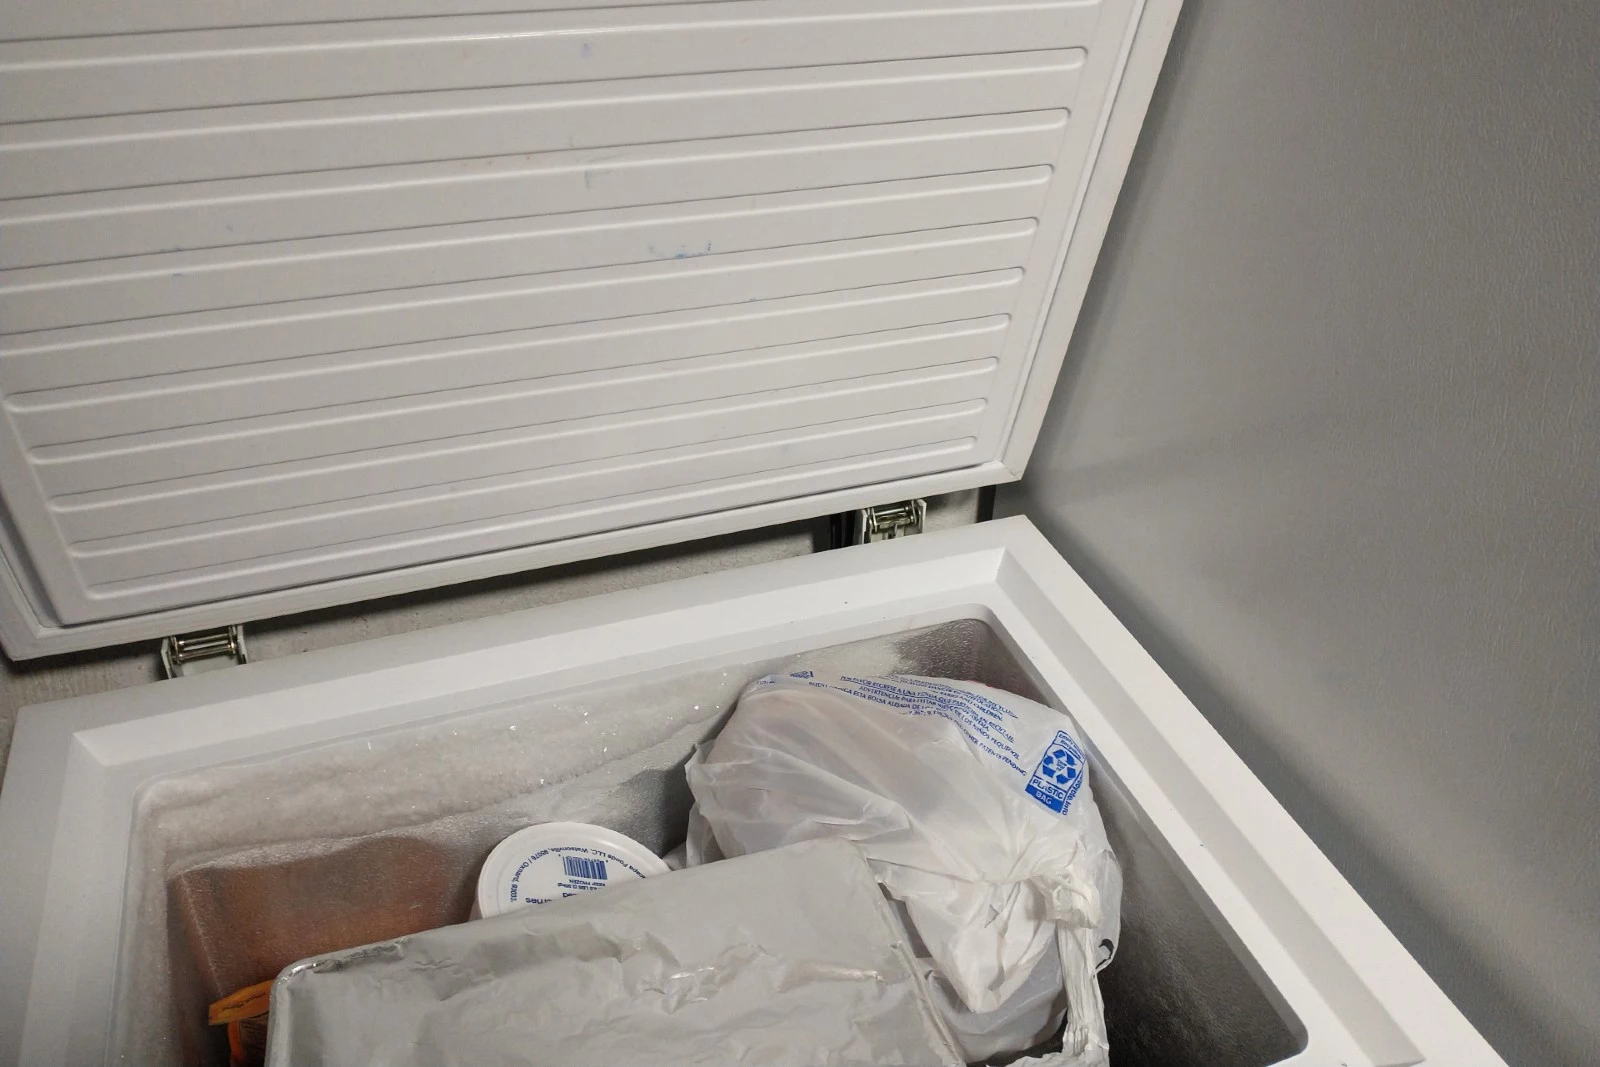 Boy's body found in freezer